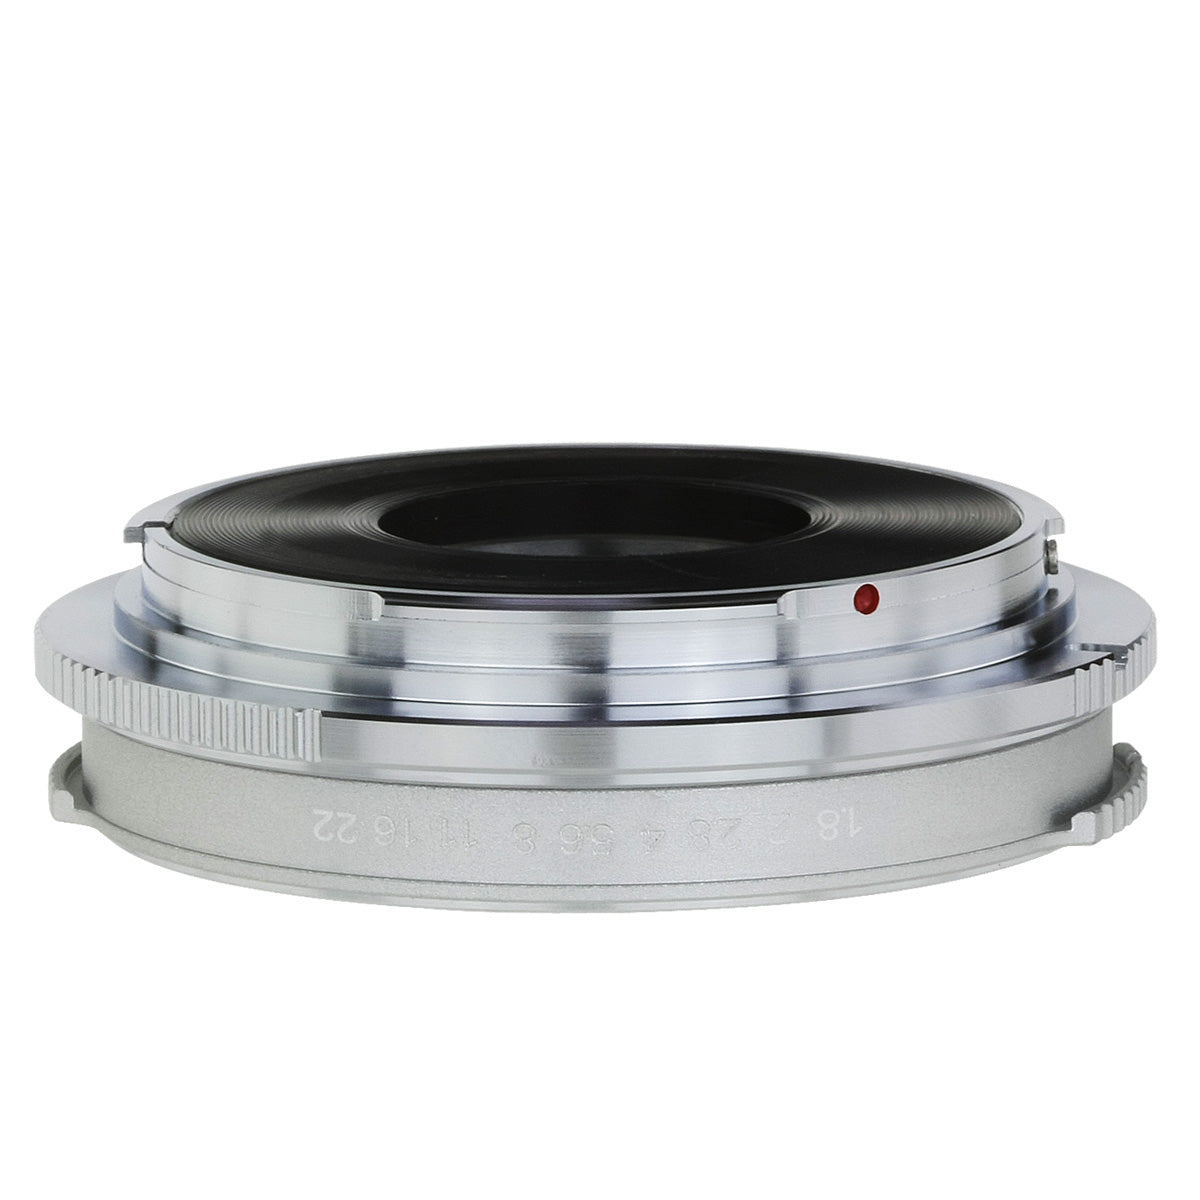 Haoge Lens Mount Adapter for Voigtlander Retina DKL mount Lens to Canon EOS EF EF-S Mount Camera